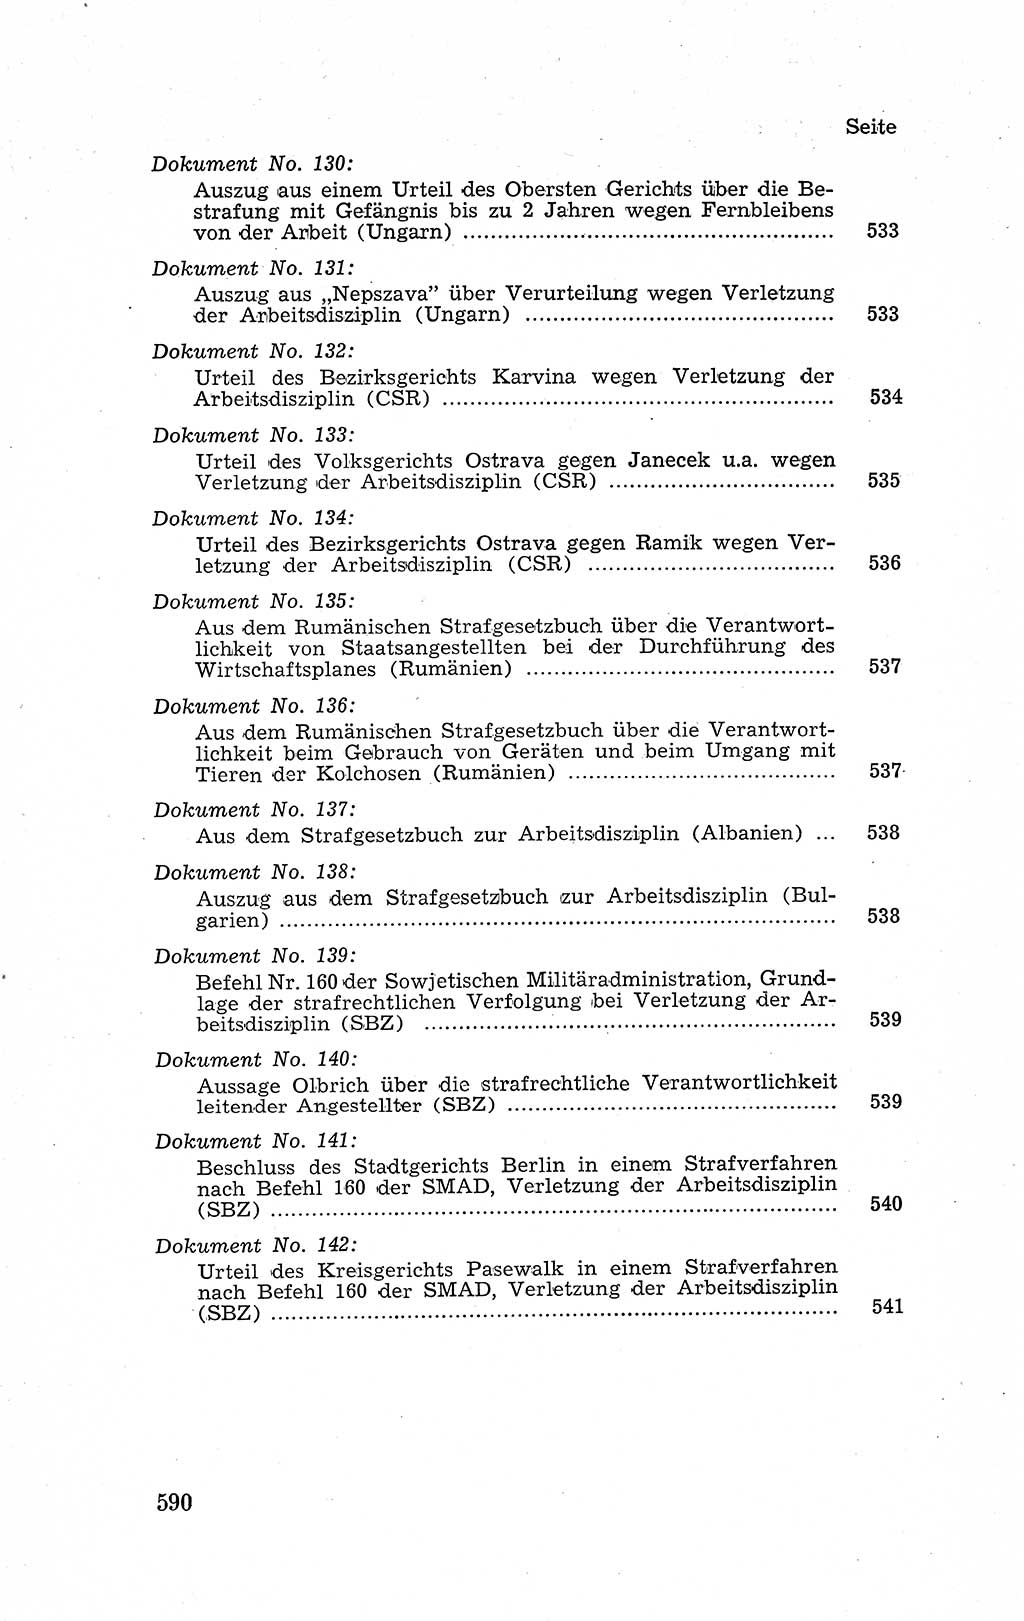 Recht in Fesseln, Dokumente, Internationale Juristen-Kommission [Bundesrepublik Deutschland (BRD)] 1955, Seite 590 (R. Dok. IJK BRD 1955, S. 590)